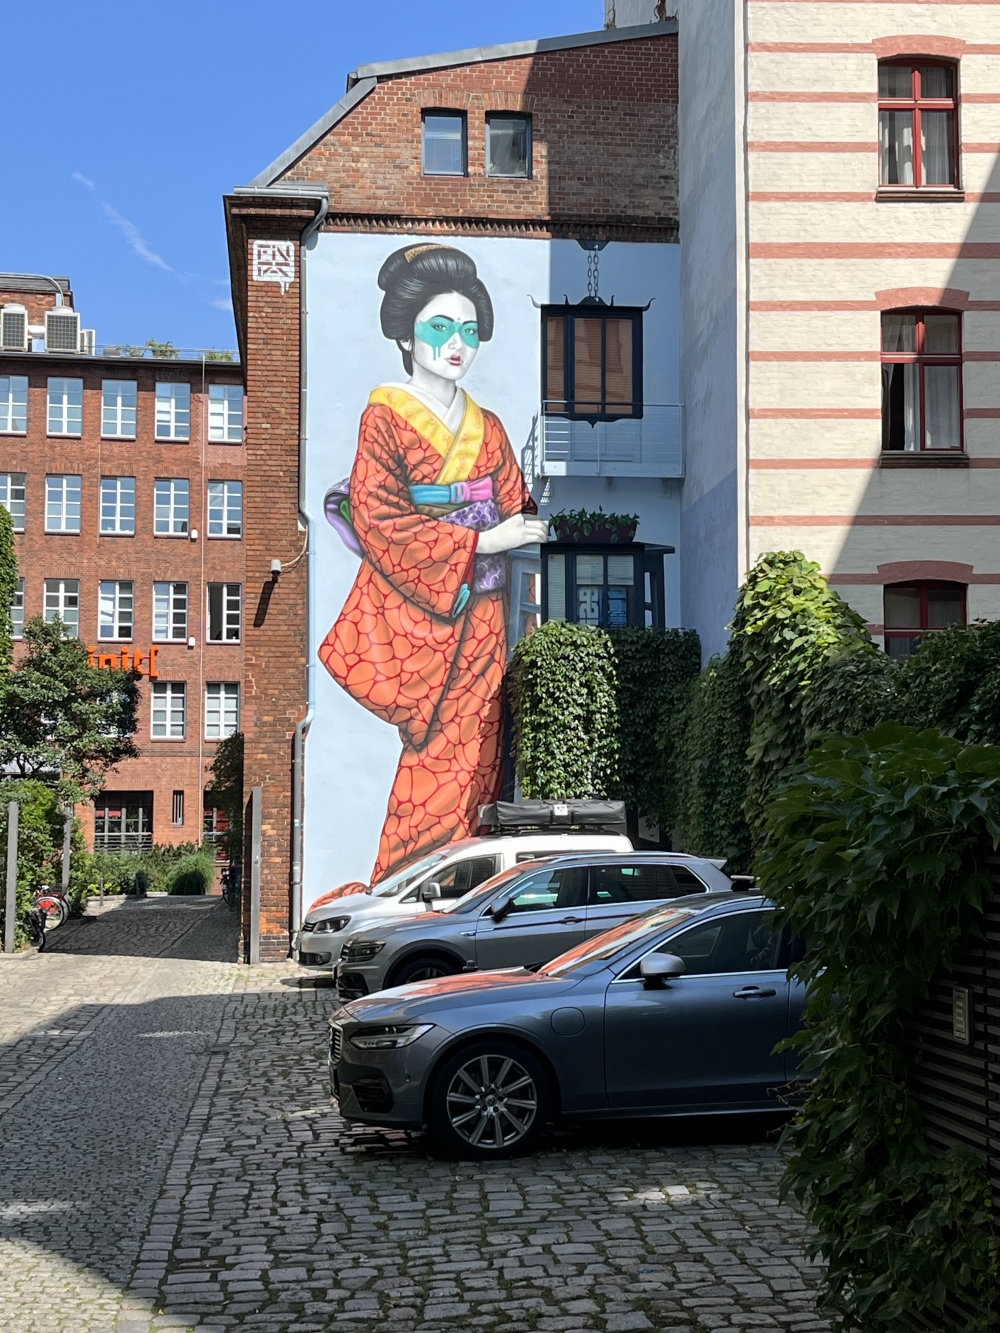 mural in Berlin by artist Fin Dac.